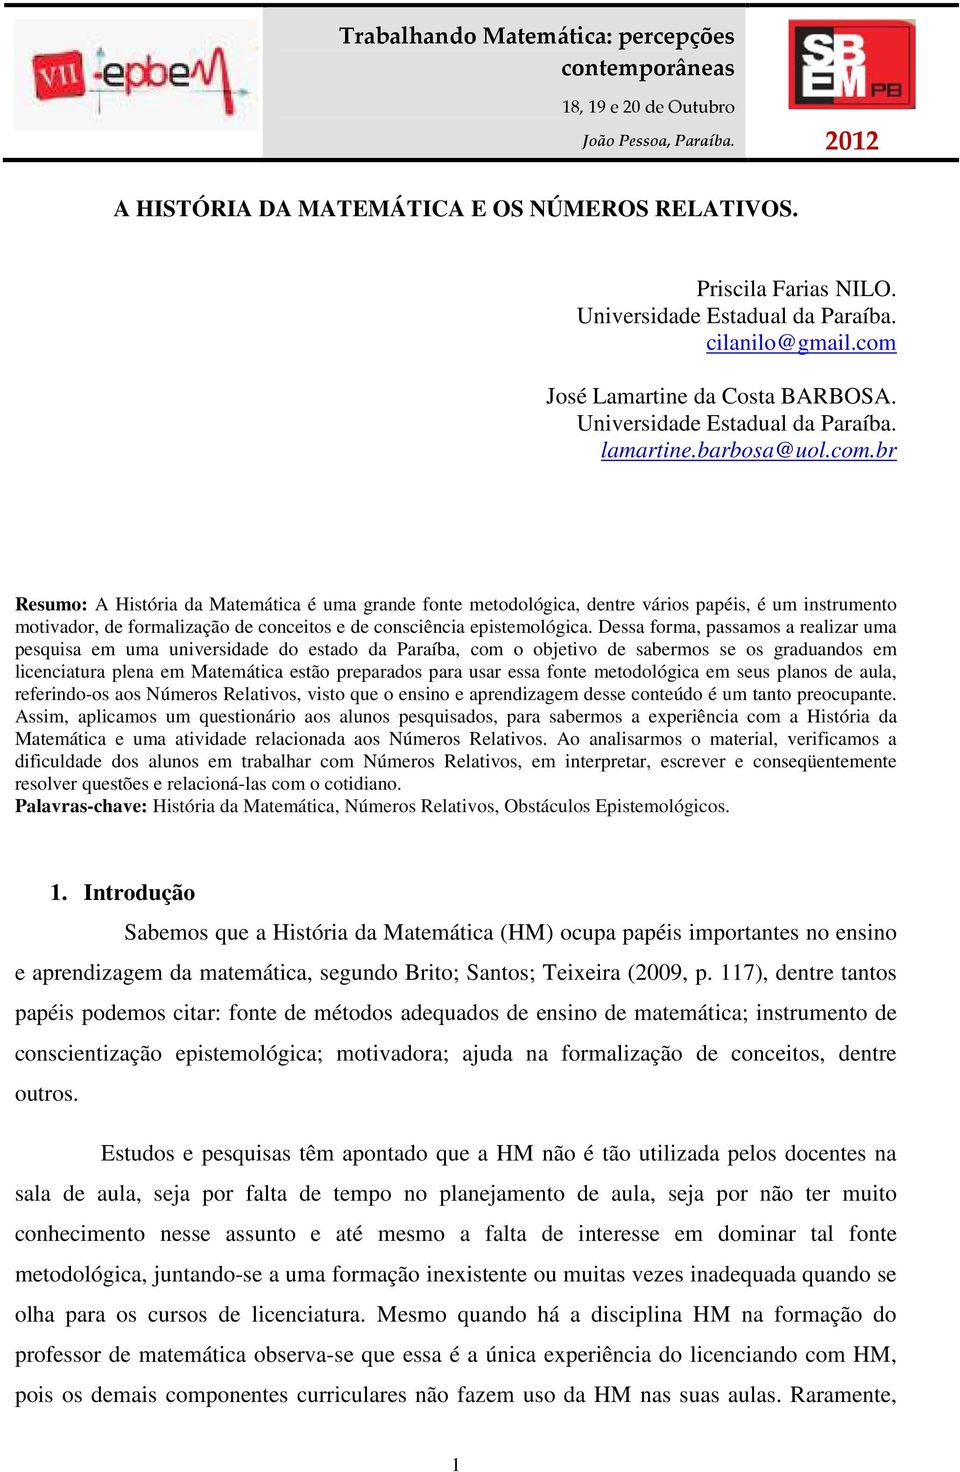 Dessa forma, passamos a realizar uma pesquisa em uma universidade do estado da Paraíba, com o objetivo de sabermos se os graduandos em licenciatura plena em Matemática estão preparados para usar essa